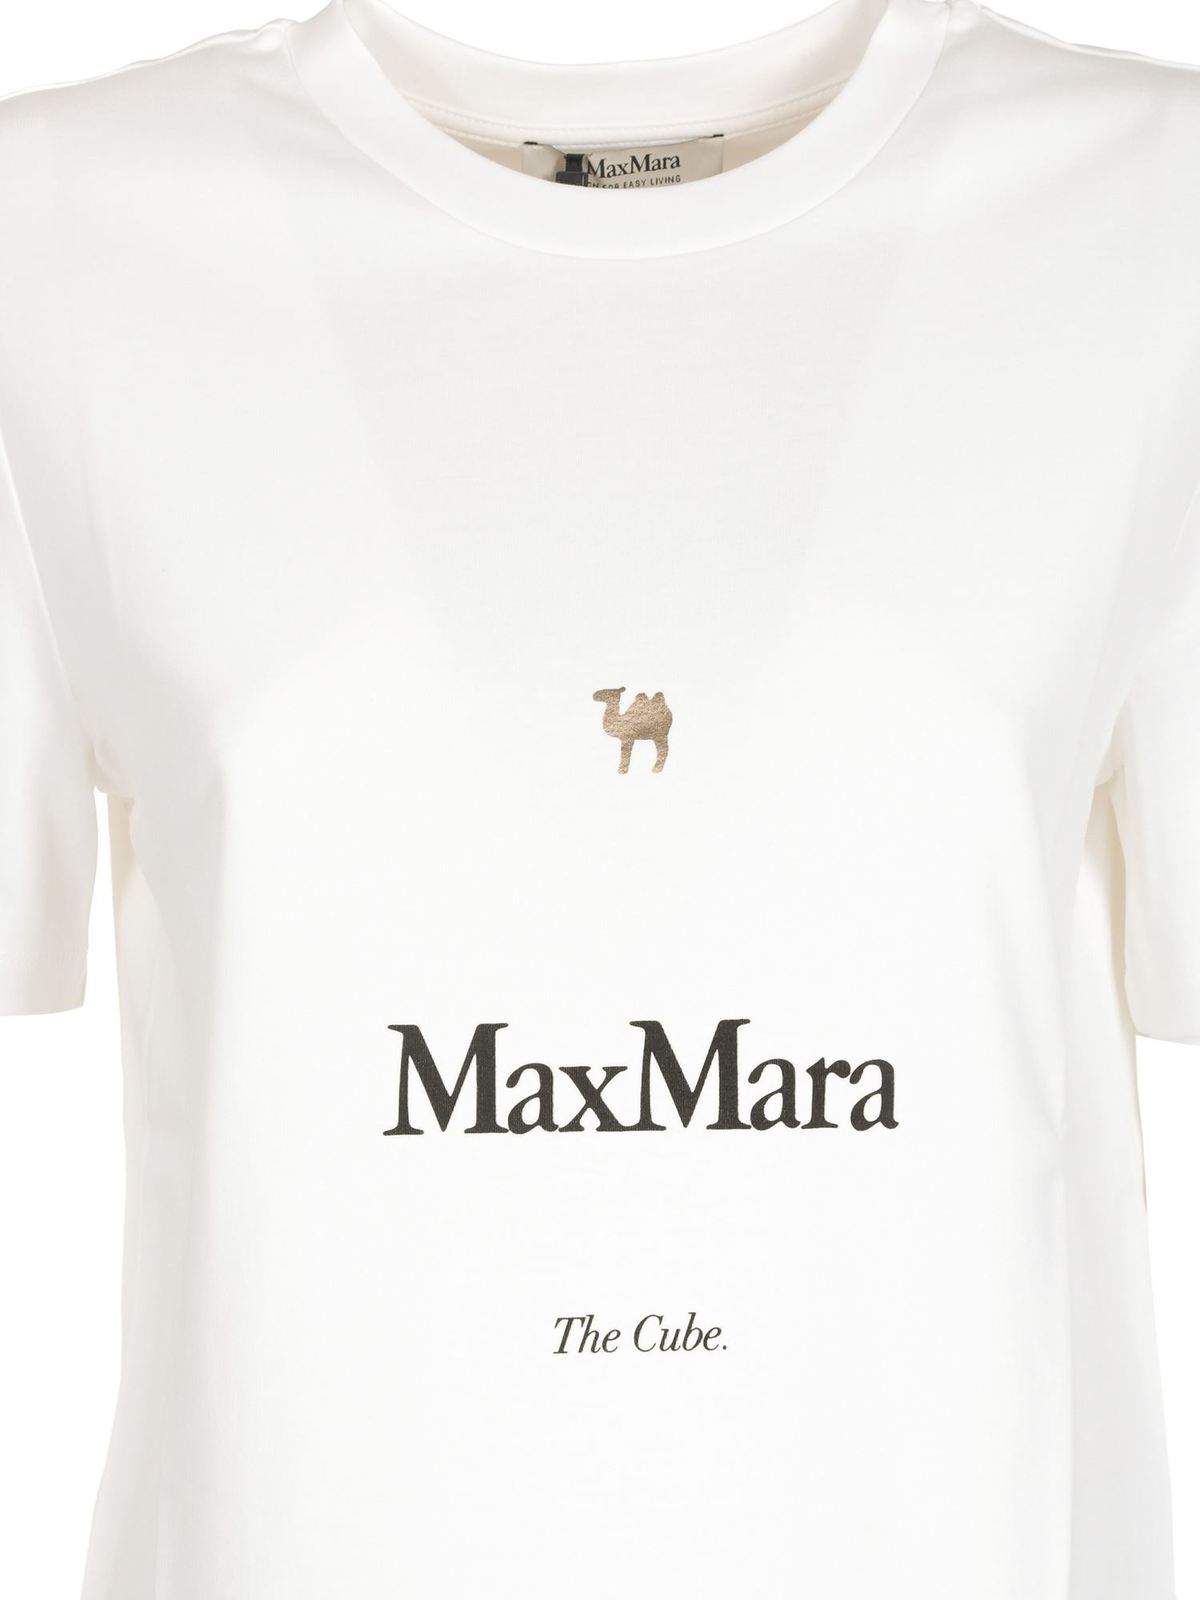 新品すぐ発送S Max Mara CUBE ONDAメタリックロゴTシャツL白Tシャツ ...